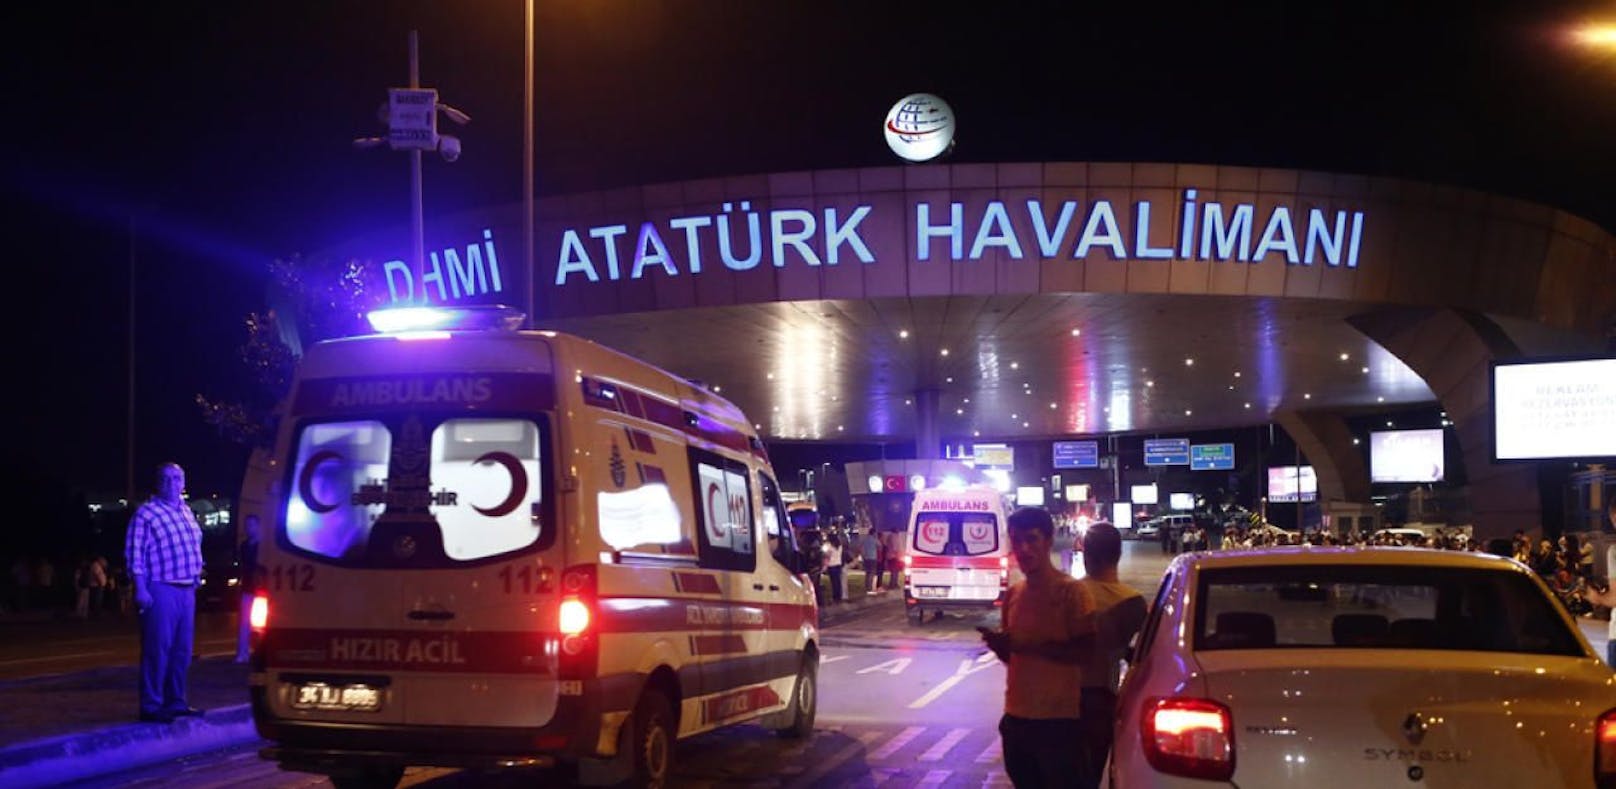 Ein Dreifach-Anschlag erschütterte im Juni 2016 den Flughafen Atatürk in Istanbul. 45 Menschen wurden getötet.